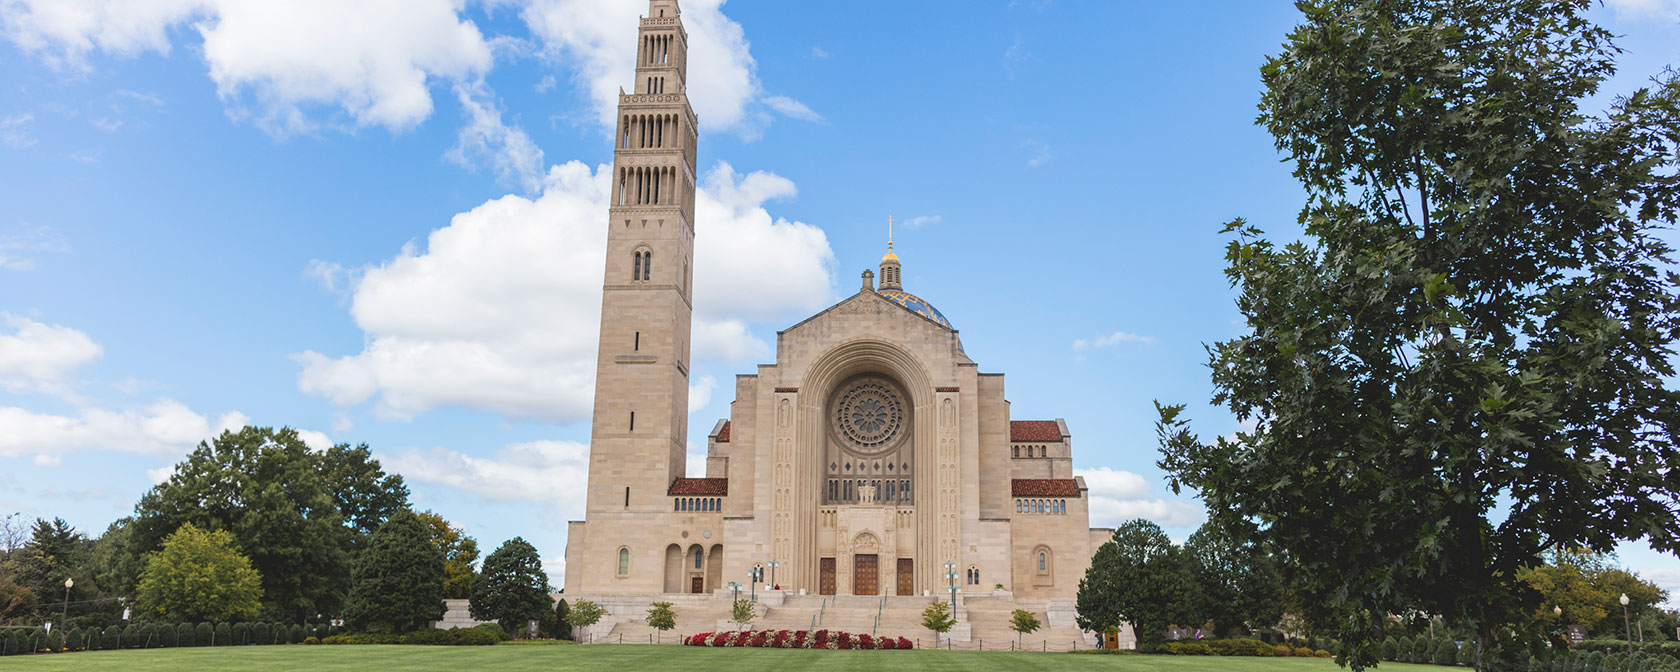 Basilica del Santuario Nazionale dell'Immacolata Concezione